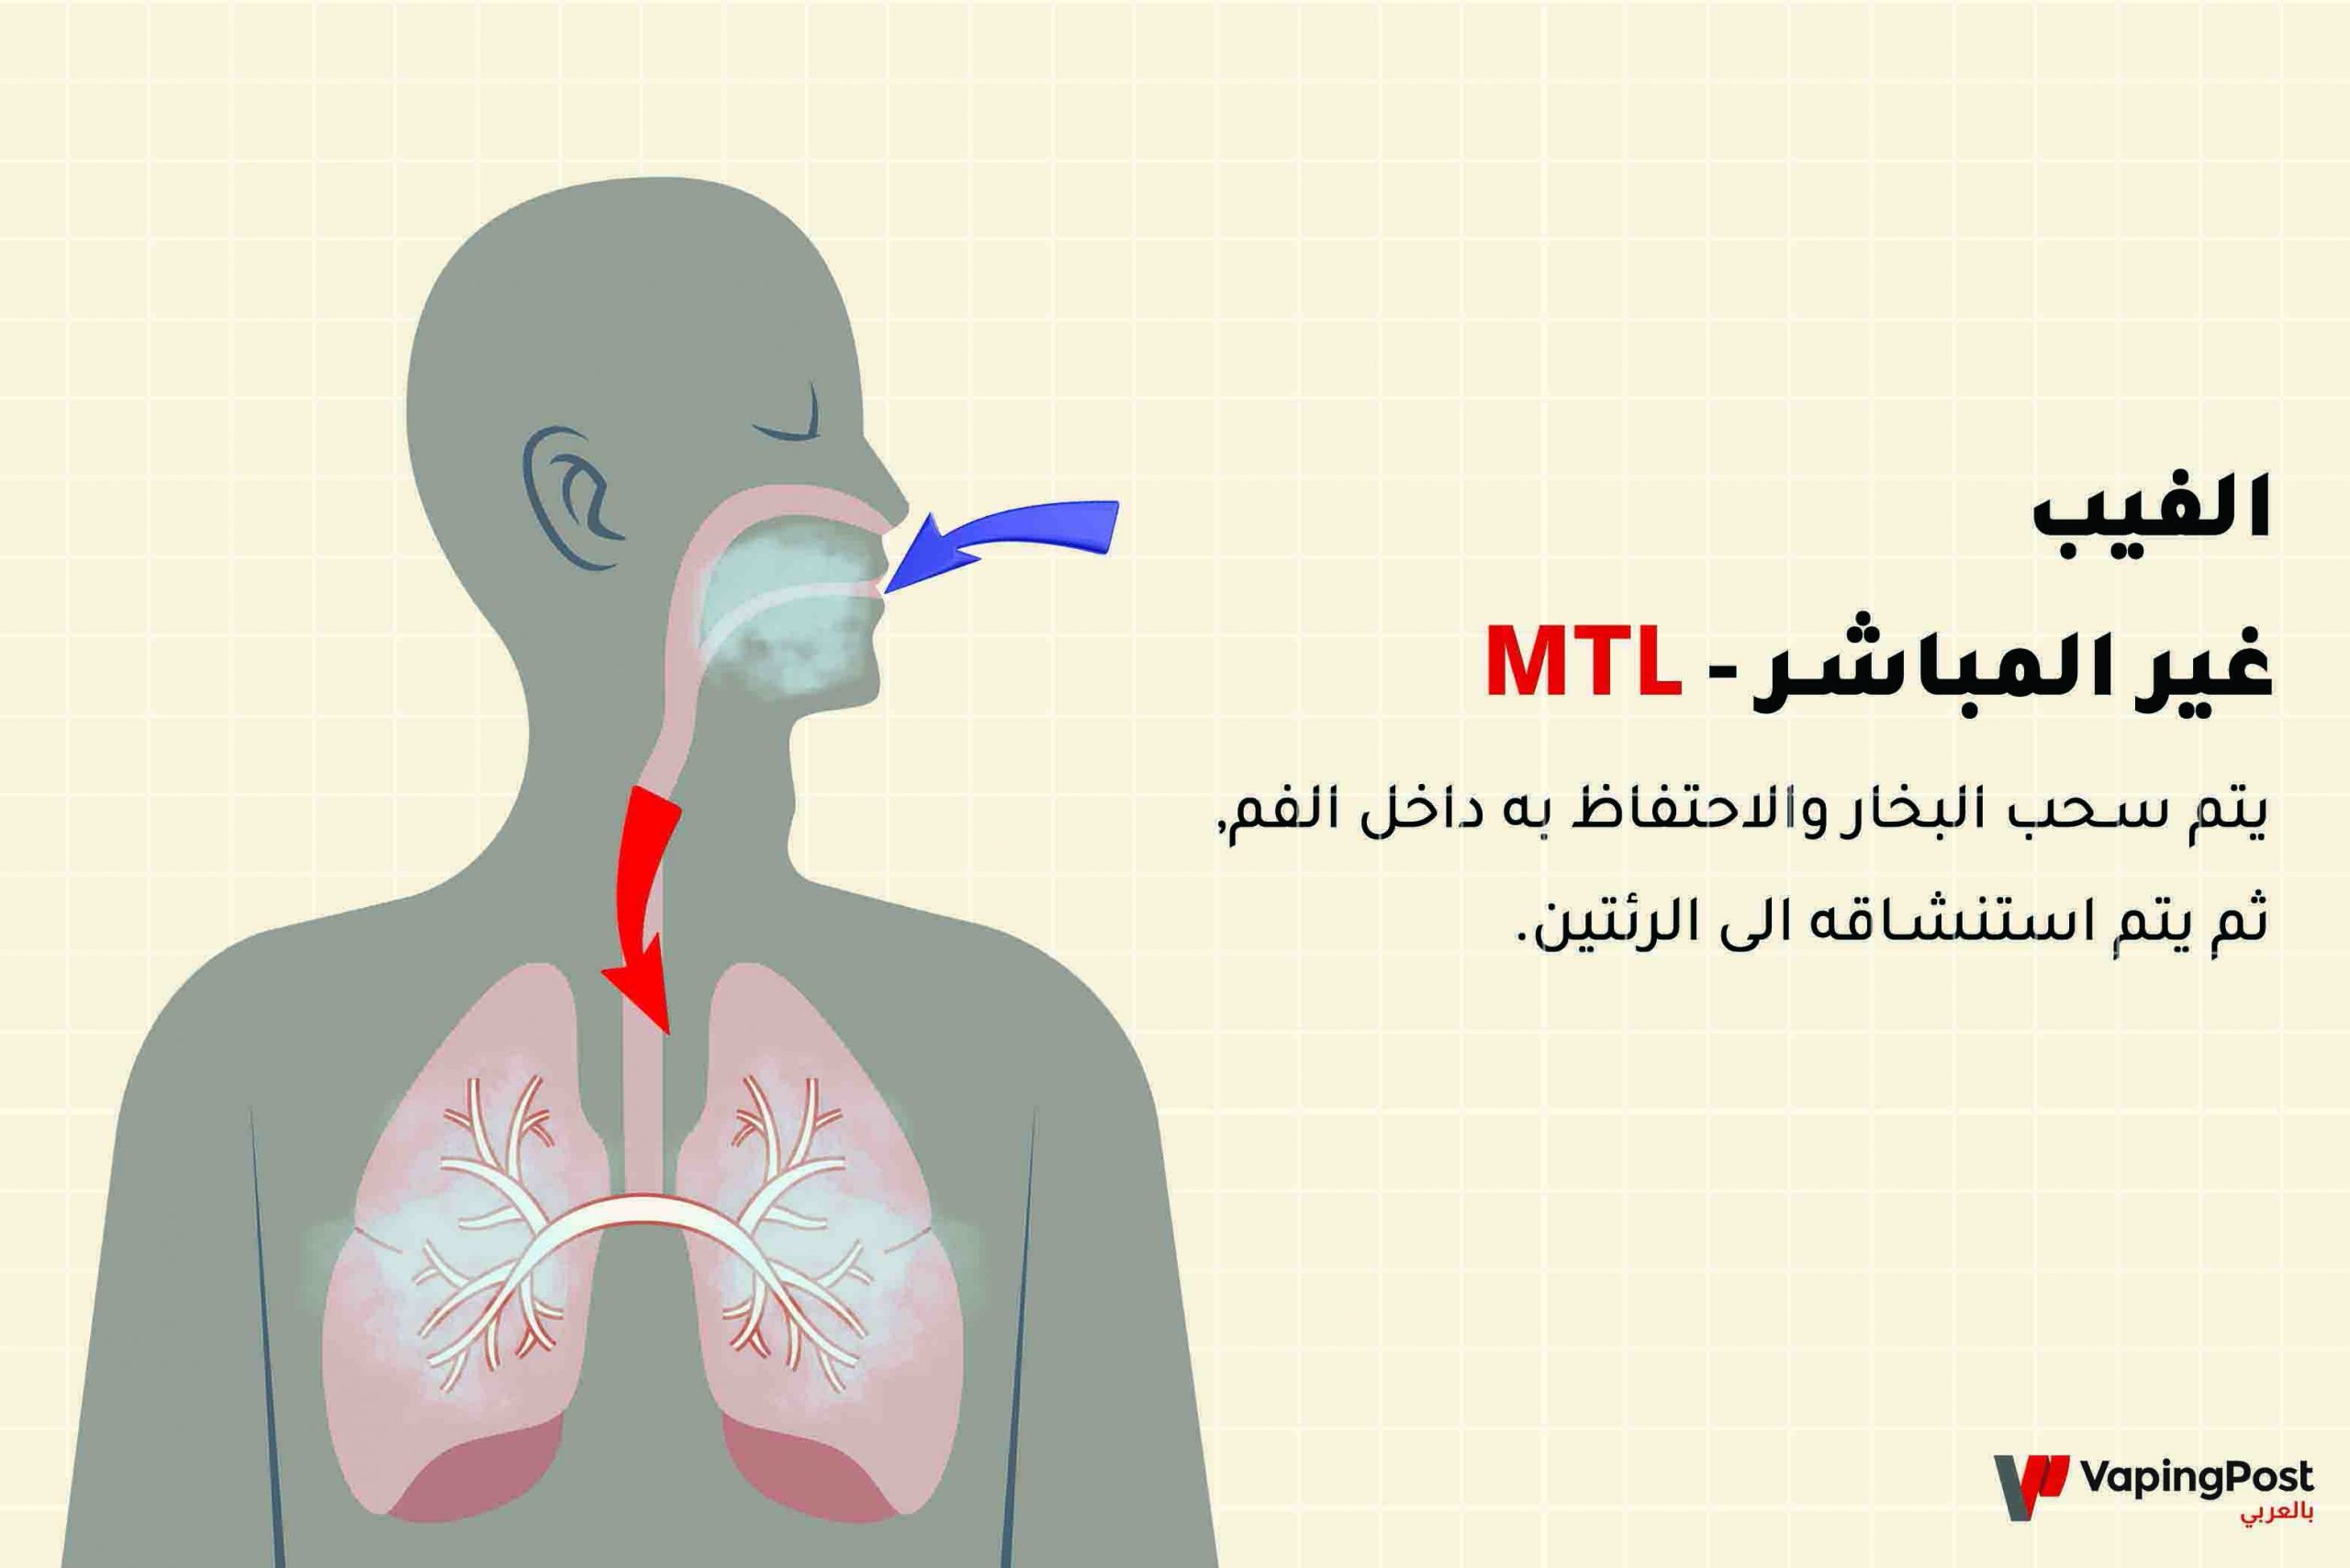 الفيب غير المباشر - MTL